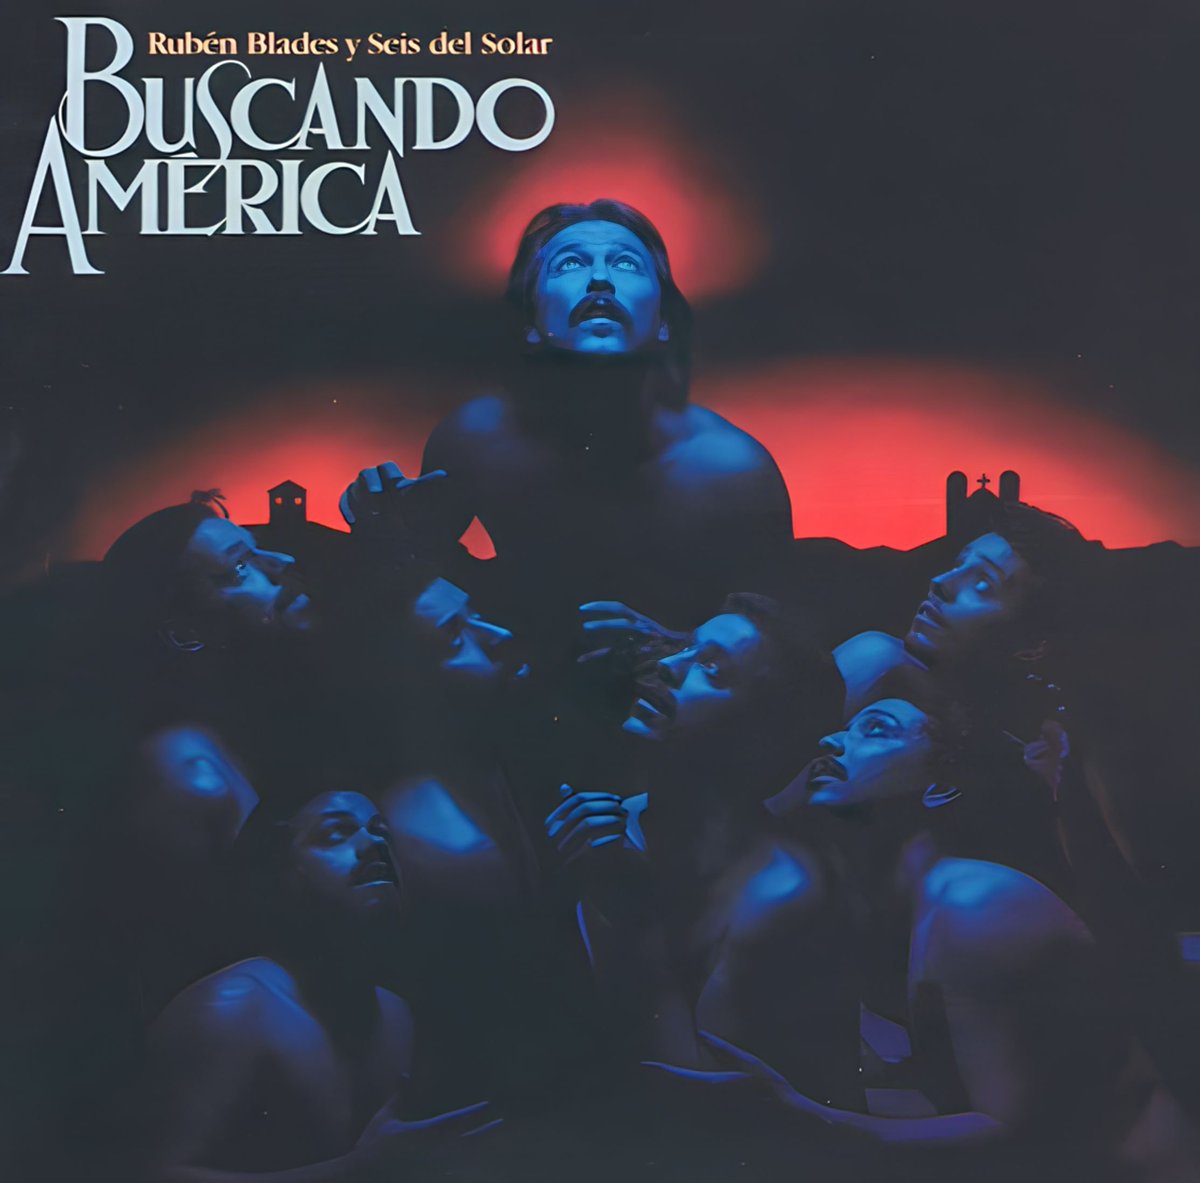 40 años de ‘Buscando América’, uno de los mejores trabajos de Rubén Blades y uno de los discos de salsa más destacados de la historia. Grabado en los Eurosound Studios de Nueva York entre mayo y agosto de 1983 con su banda, Seis Del Solar, y publicado por el sello Elektra el